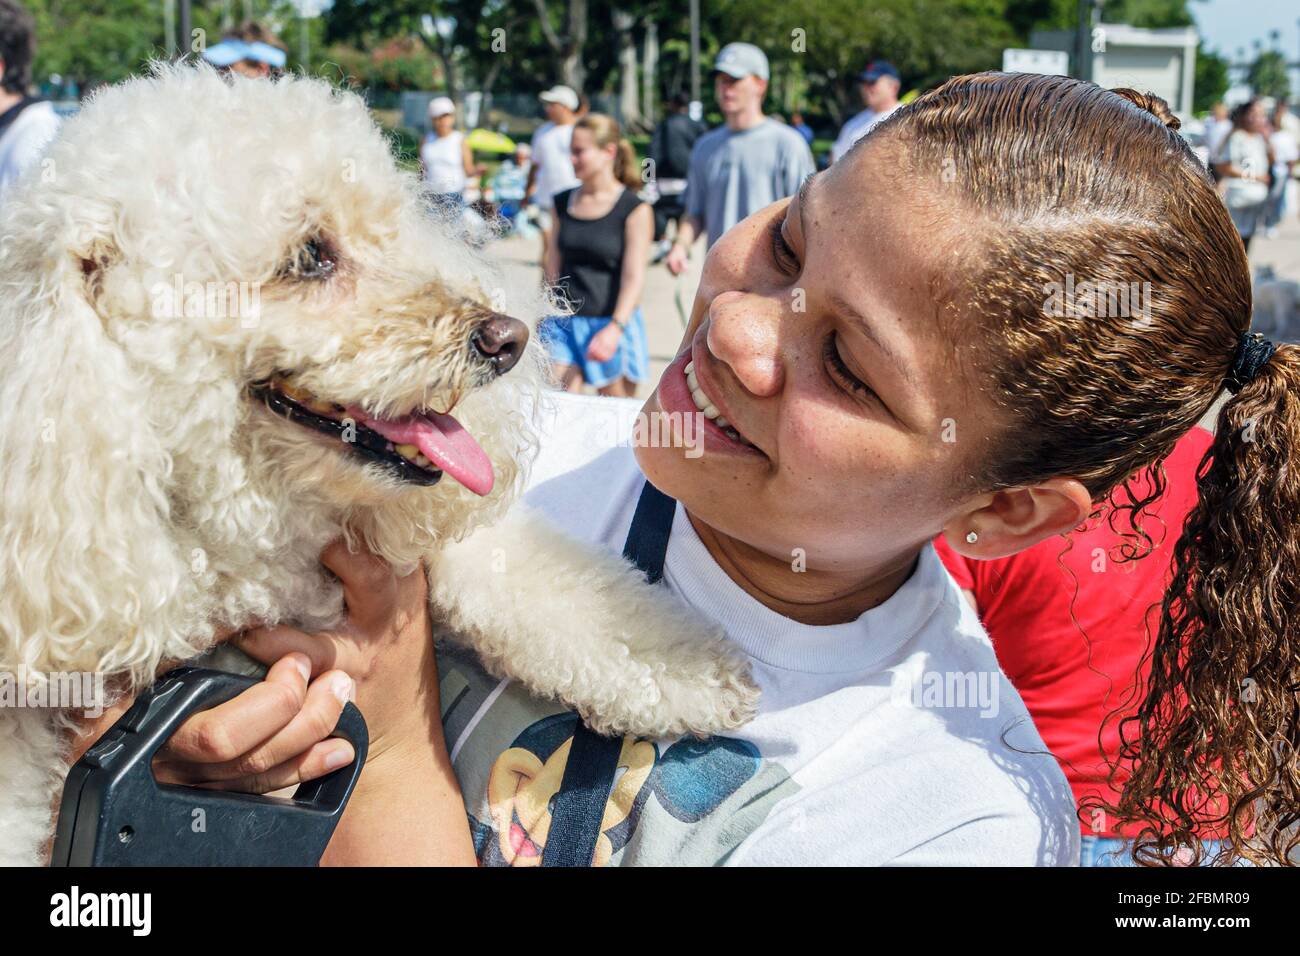 Miami Florida, Bayfront Park Walk for the Animals, Humane Society événement de collecte de fonds chiens, Black girl femelle enfant étudiant bénévole s'embrassant chien de garde, Banque D'Images